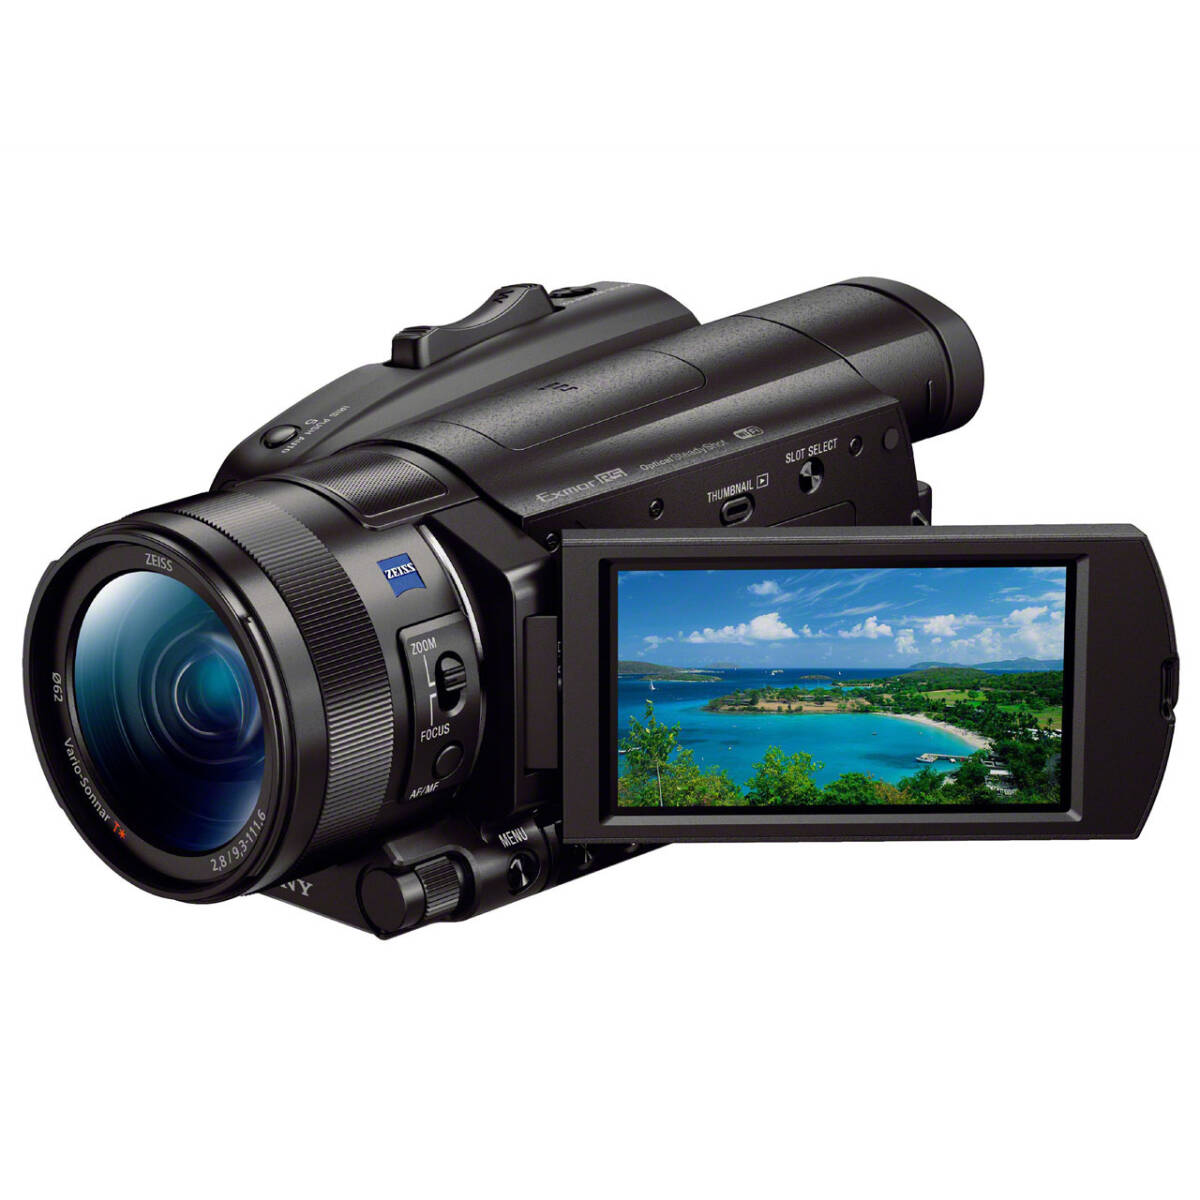 4Kビデオカメラ 宅配レンタル [SONY FDR-AX700] 1日2,980円(64GB+バッテリー×2) の画像1